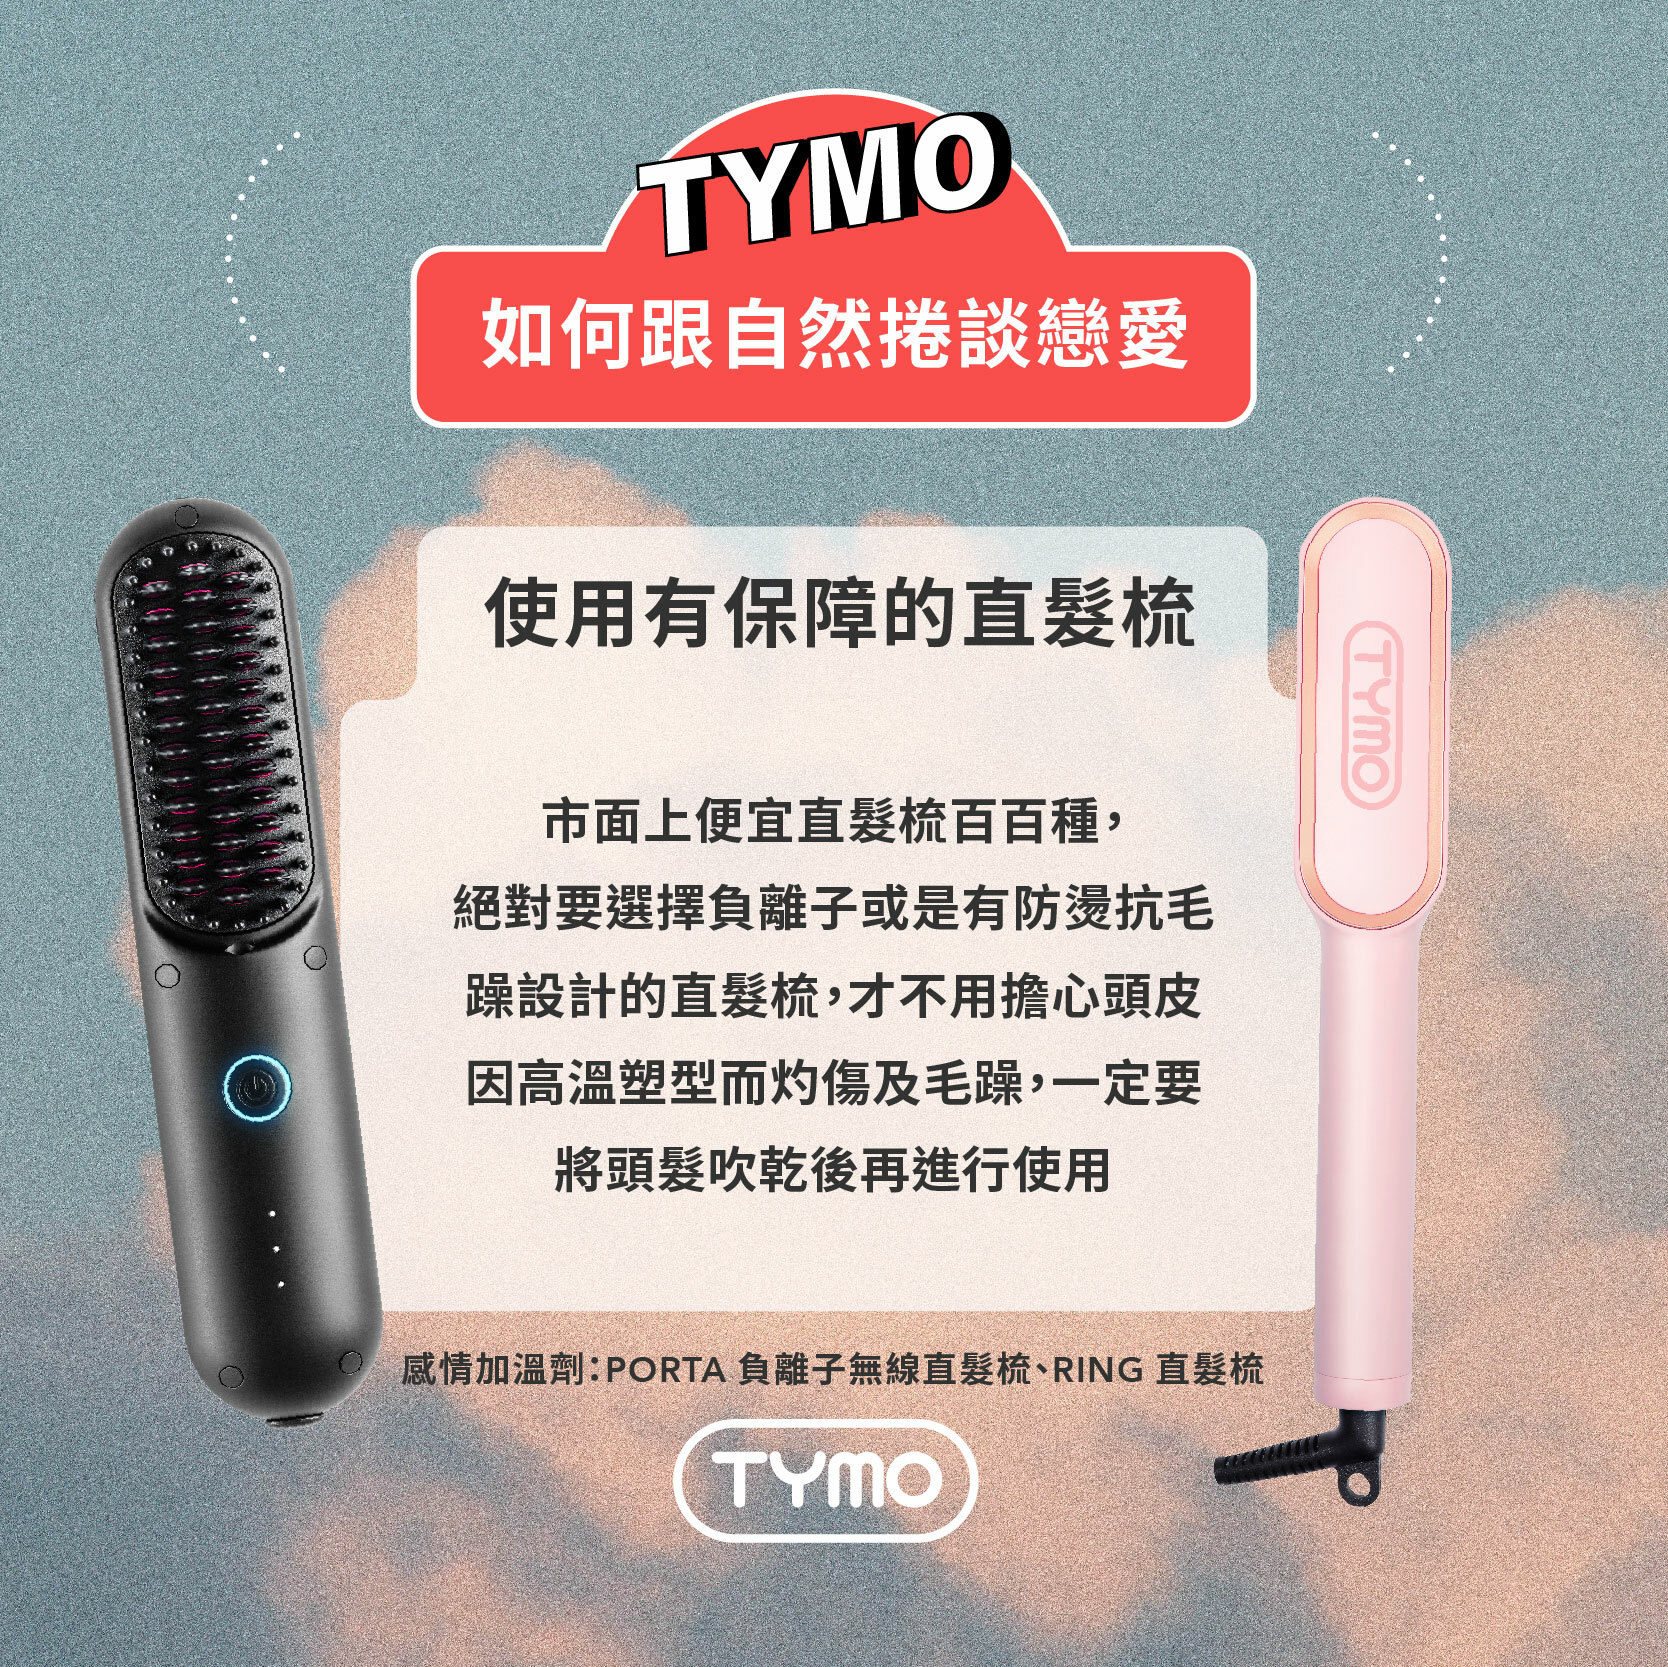 刷新銷售紀錄：TYMO 極簡無線直髮梳，3 個爆推必買亮點一次看！ - POPBEE